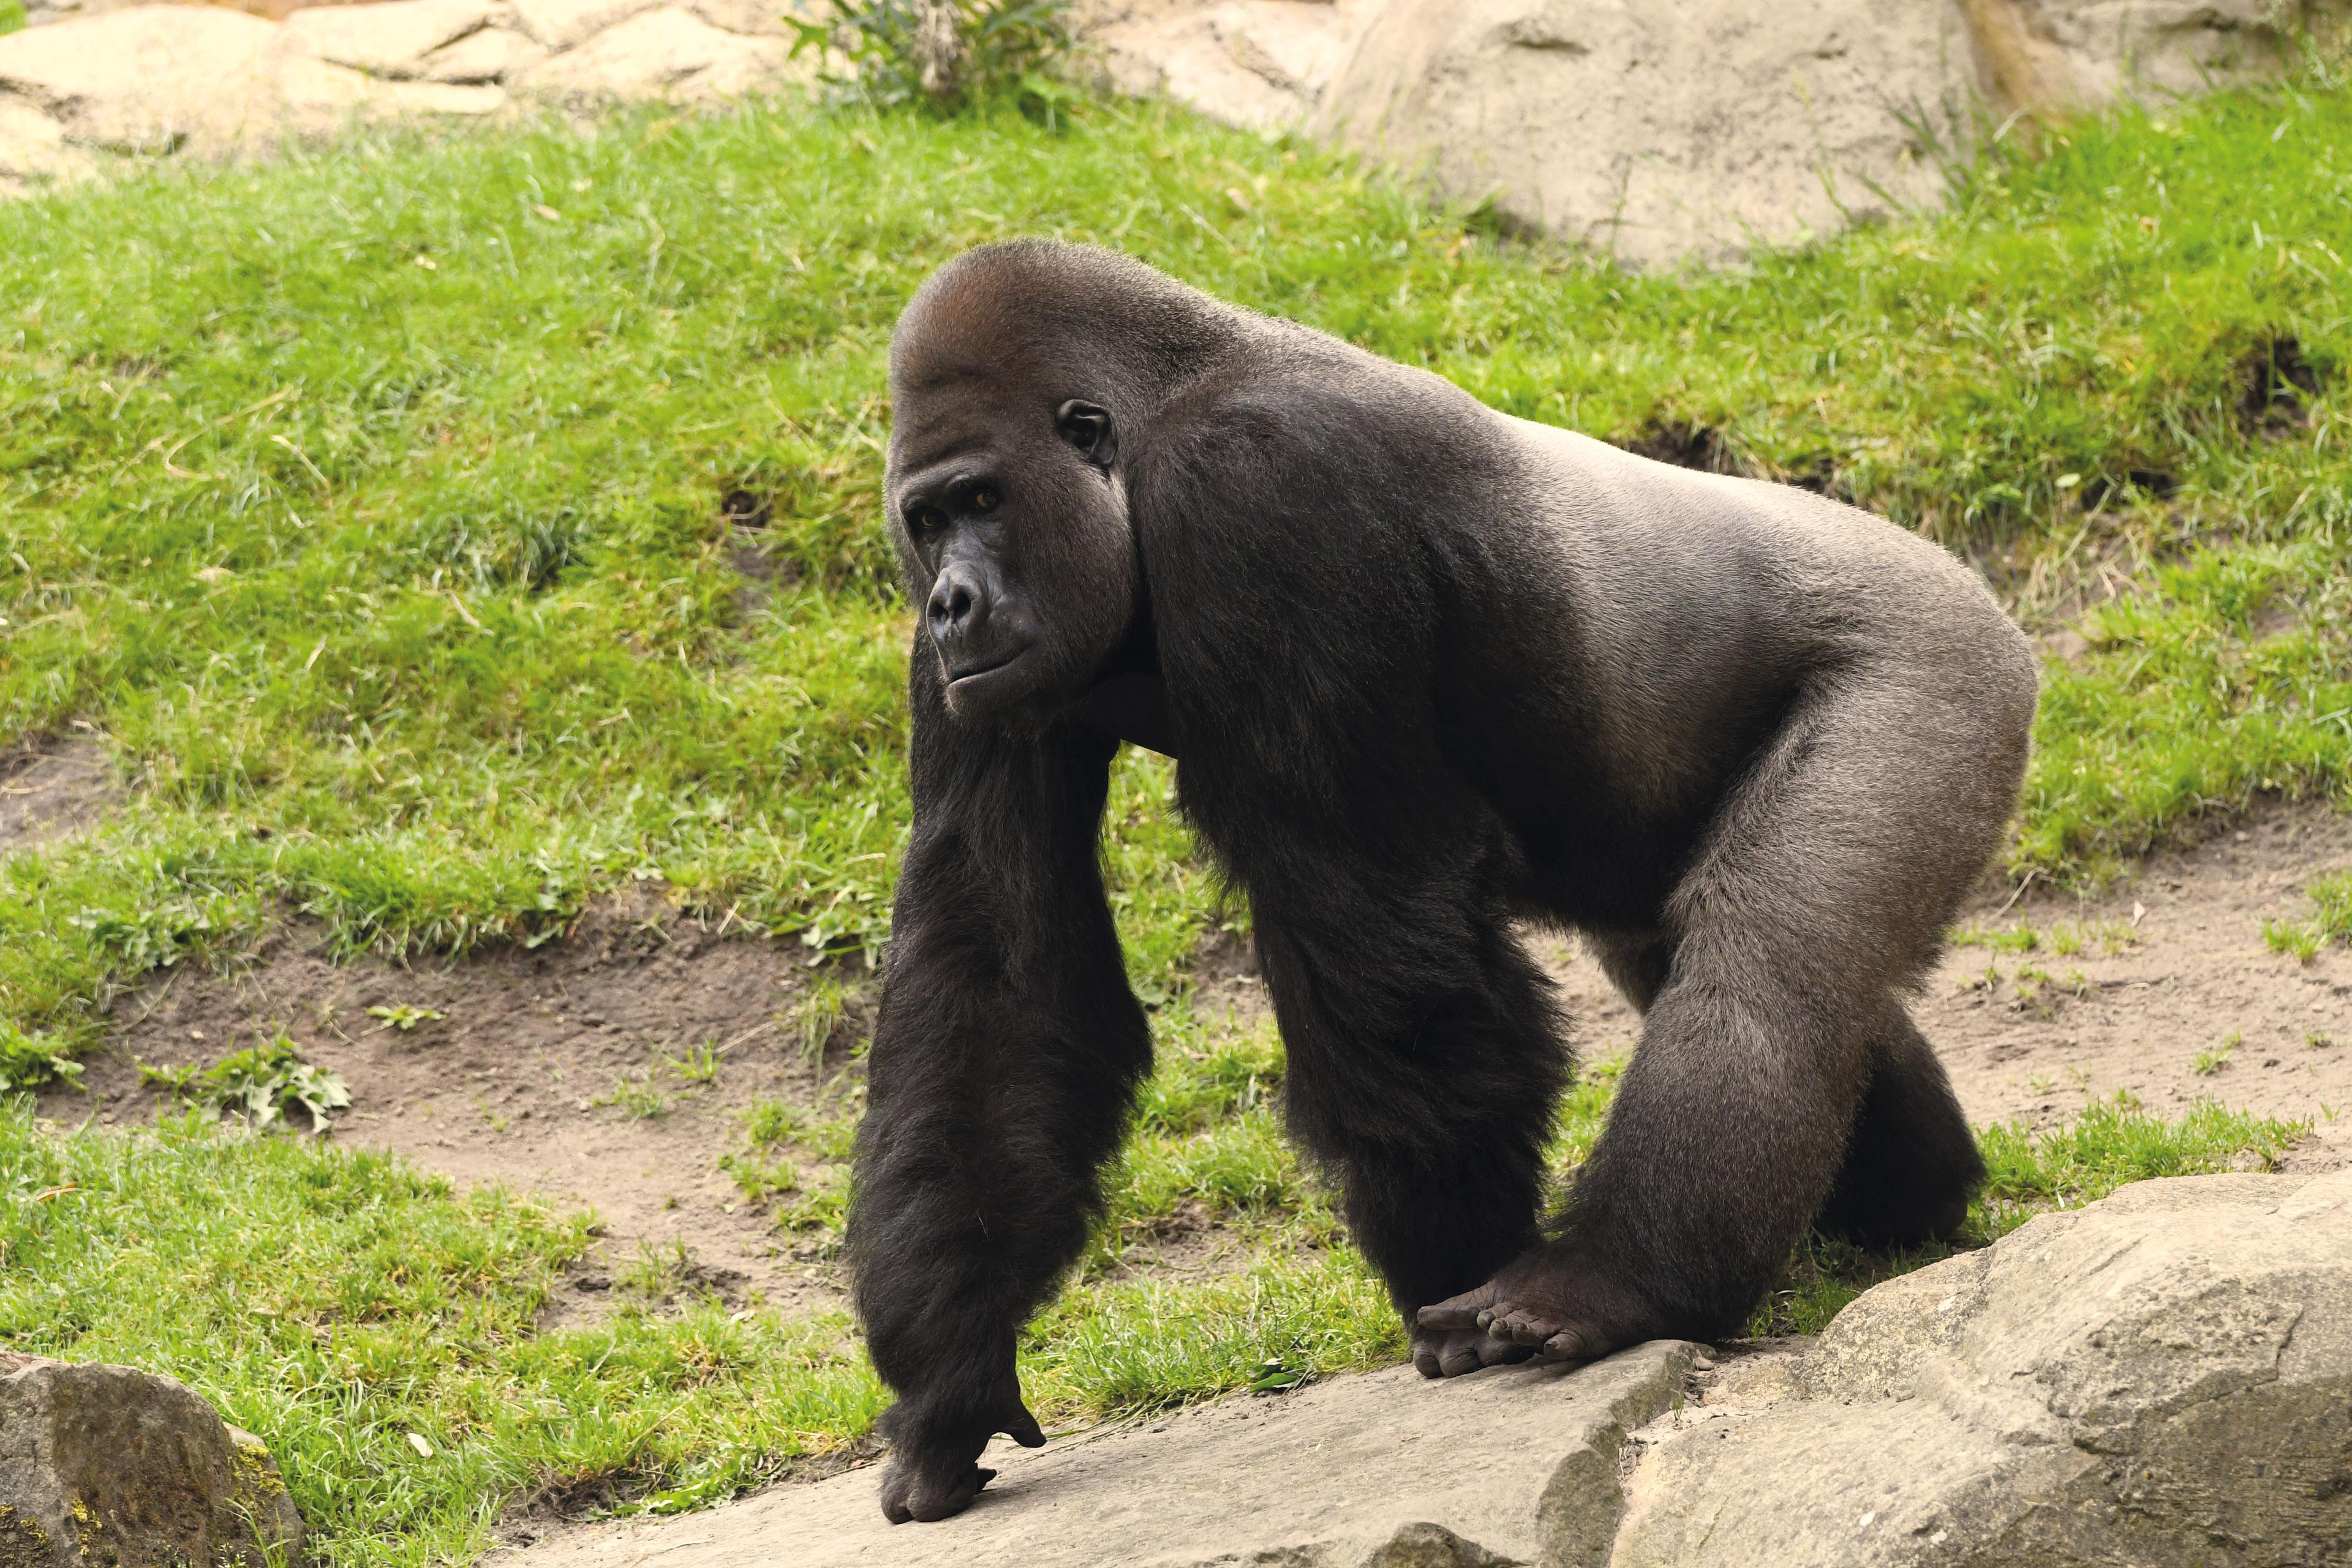 Silberrücken (Gorillamännchen) in der Themenwelt Afi Mountain im Zoo Hannover